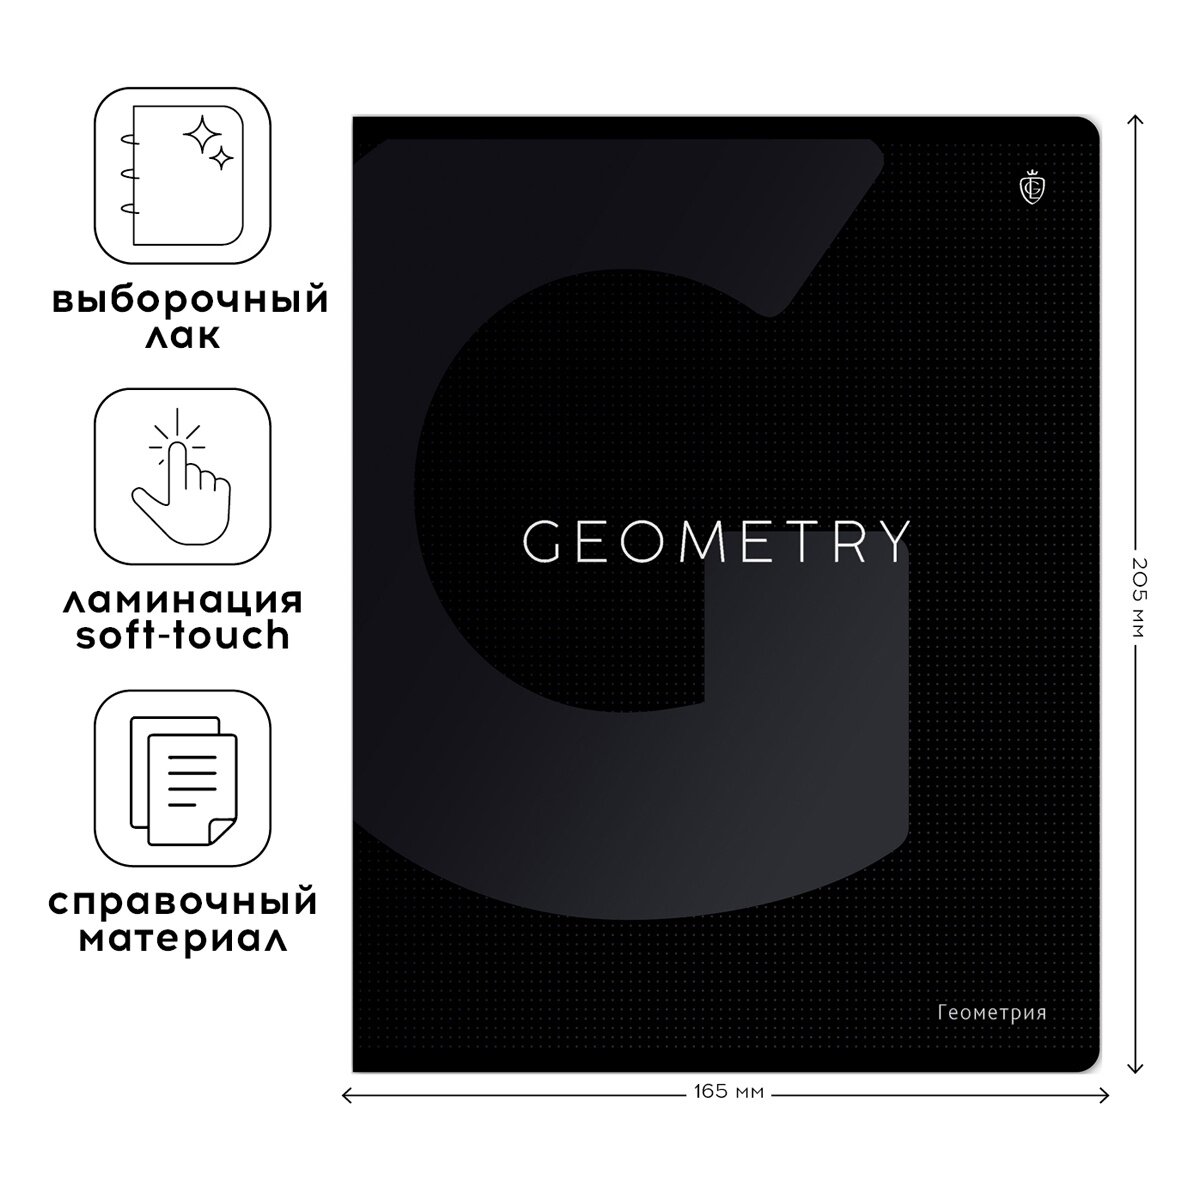 Тетрадь предметная Greenwich Line 48 листов, по геометрии, "Сolor black", с софт-тач ламинацией и выборочным УФ-лакированием (EX48-49371)